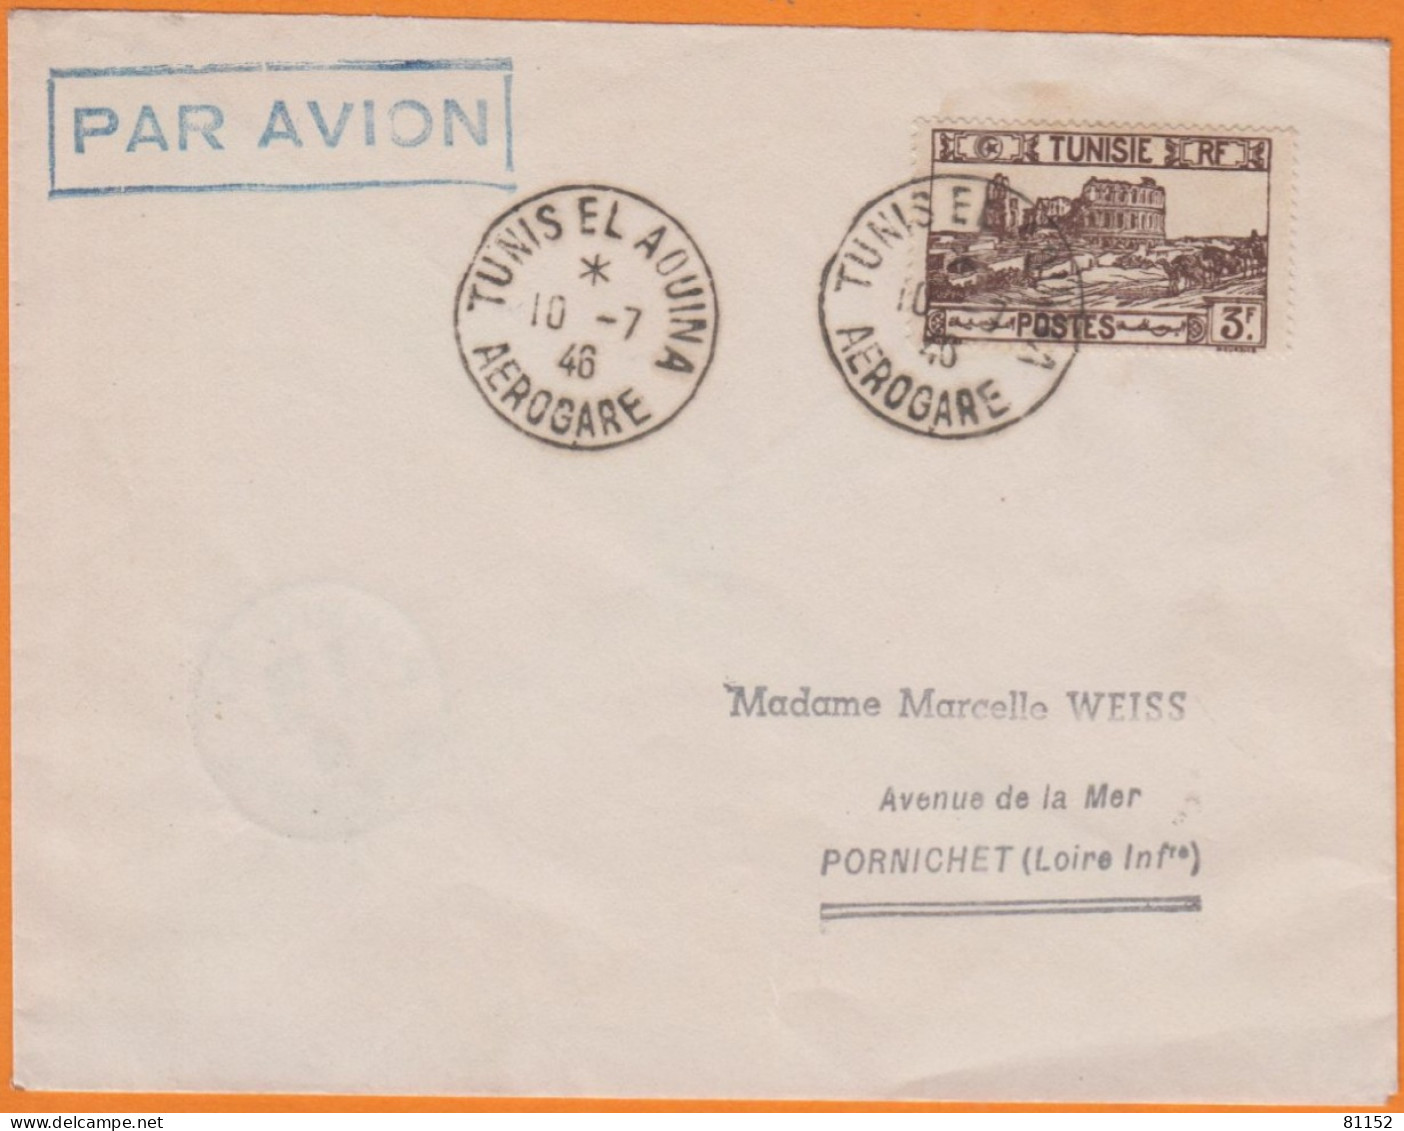 Lettre PAR AVION De TUNIS EL AOUINA  AEROGARE   Le 10 7 1947   Pour  44 PORNICHET  Affranchie à 3F - Luchtpost